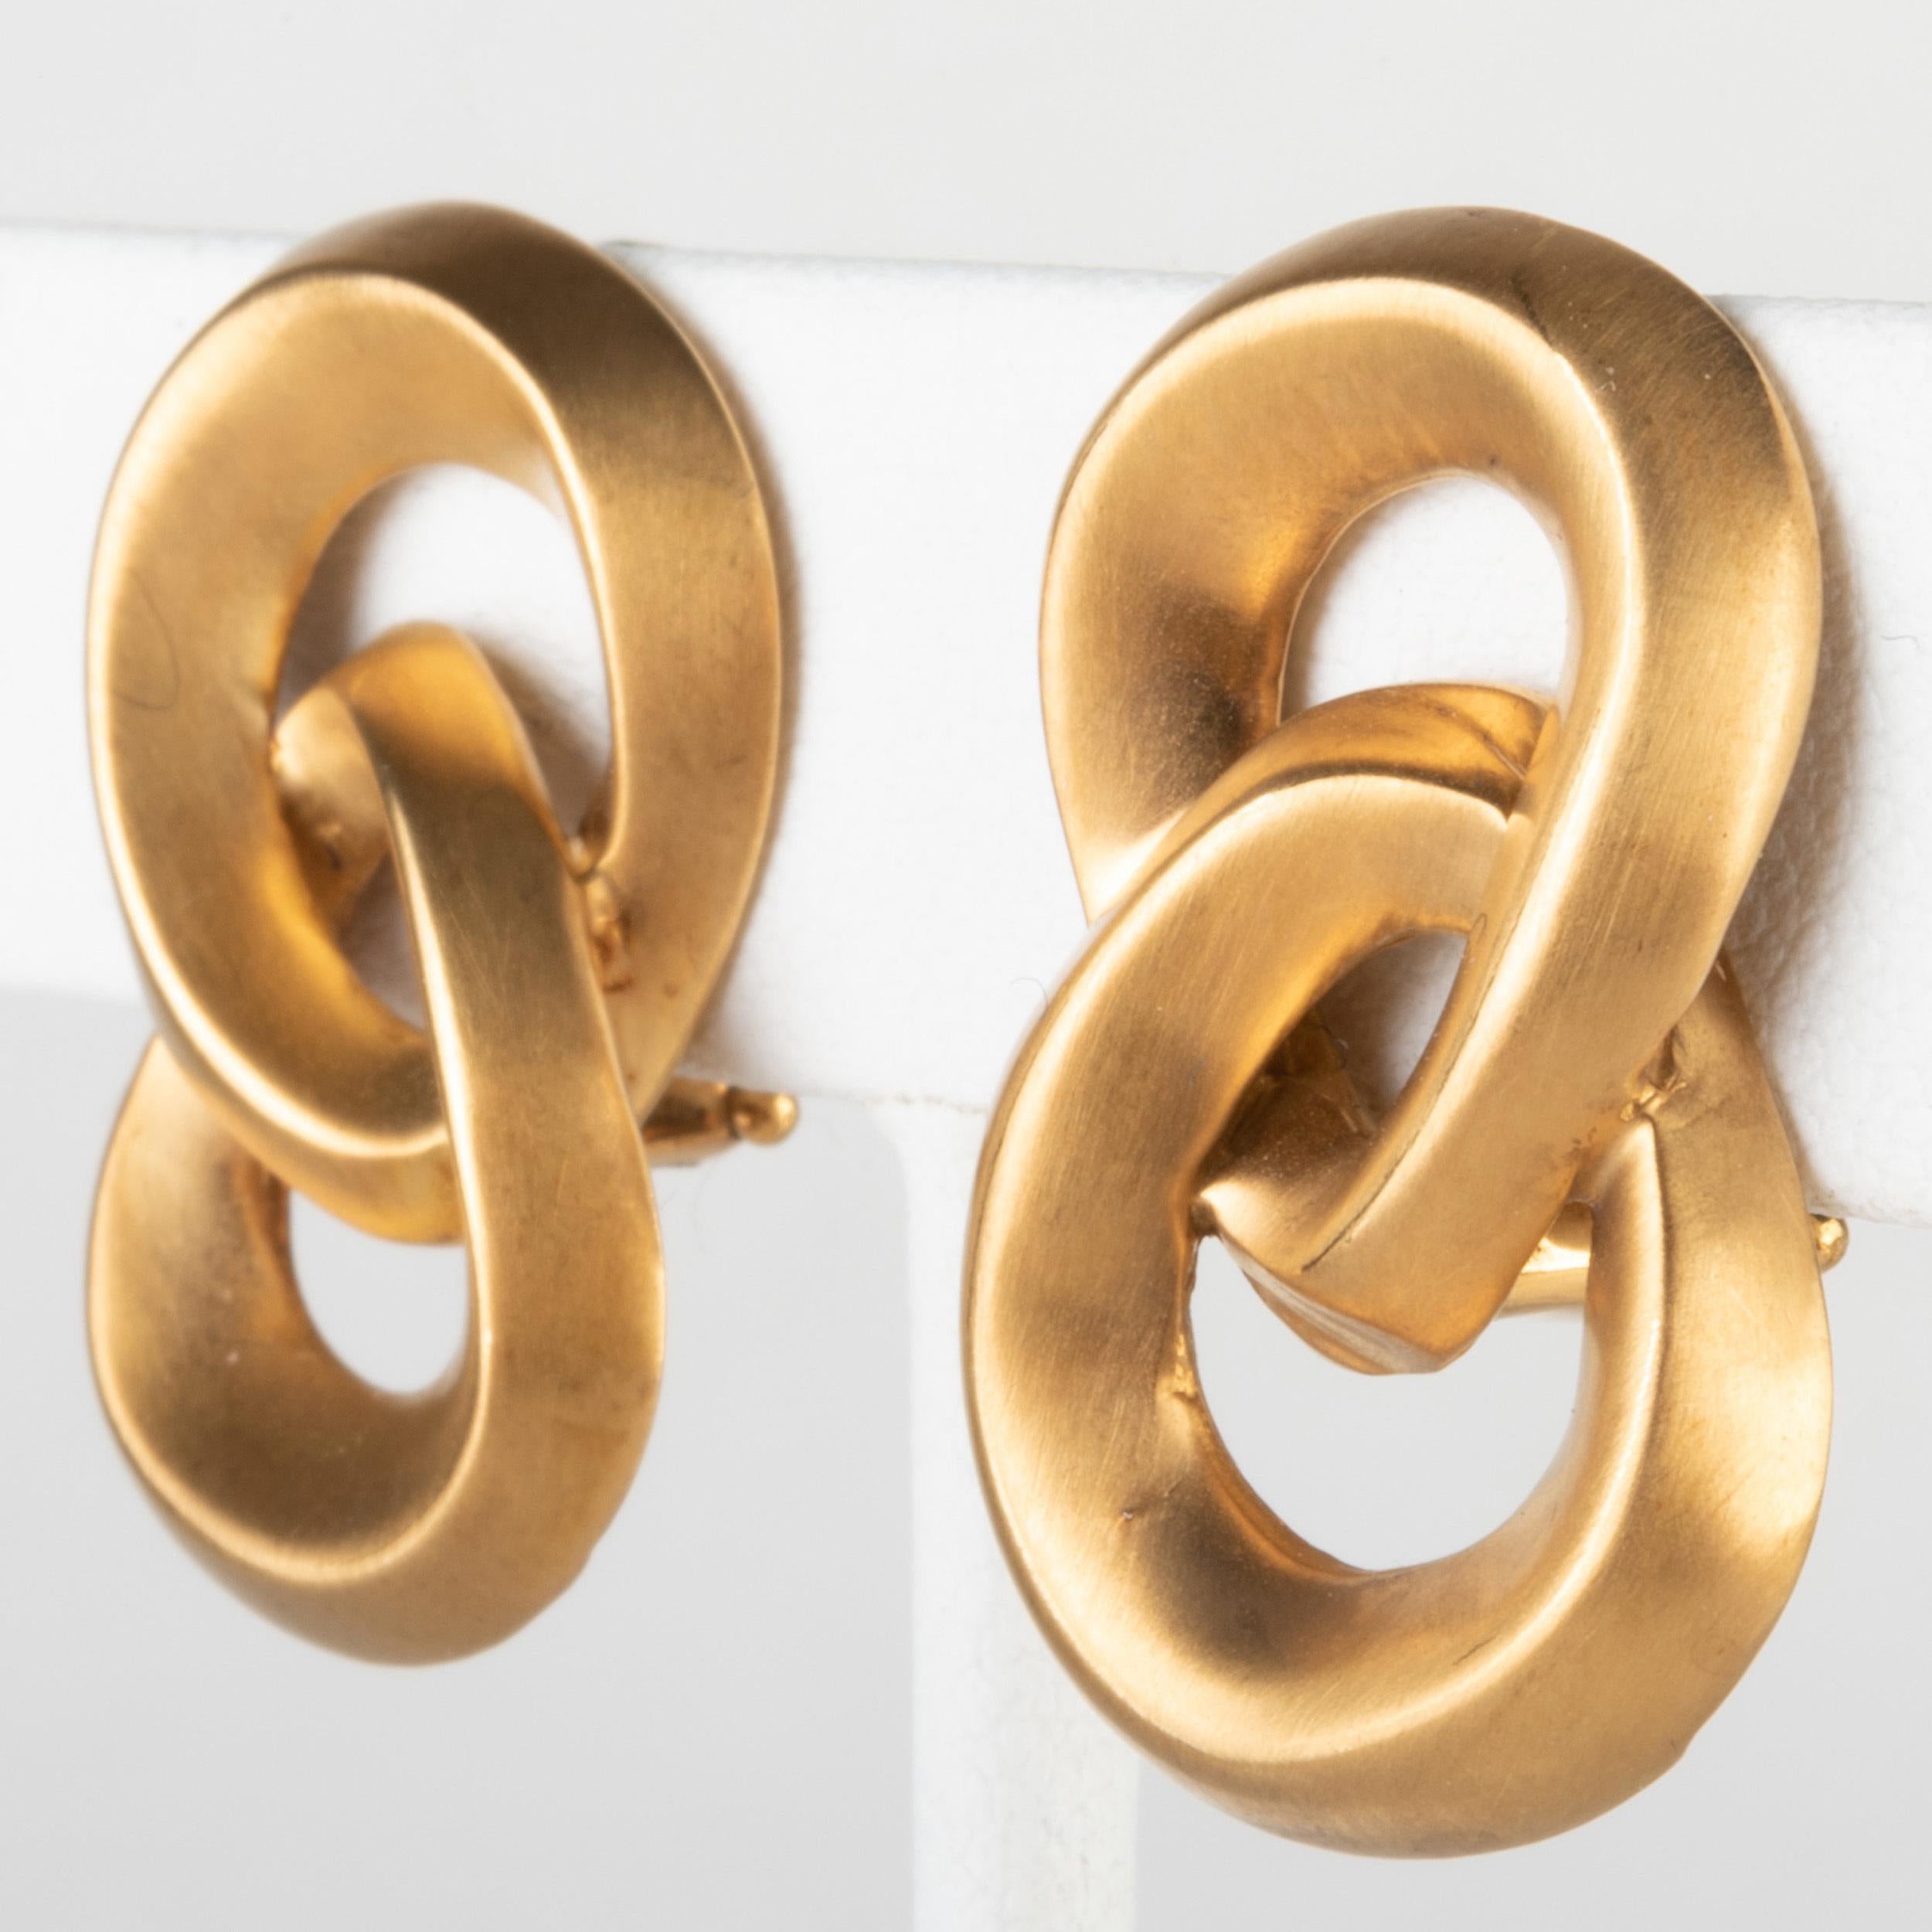 Une paire simple et élégante de boucles d'oreilles en or jaune brossé 18k par Angela Cummings.

Les boucles d'oreilles à clip sont conçues comme des nœuds entrelacés en forme de 8 avec des dos en oméga. L'or a une texture et un ton